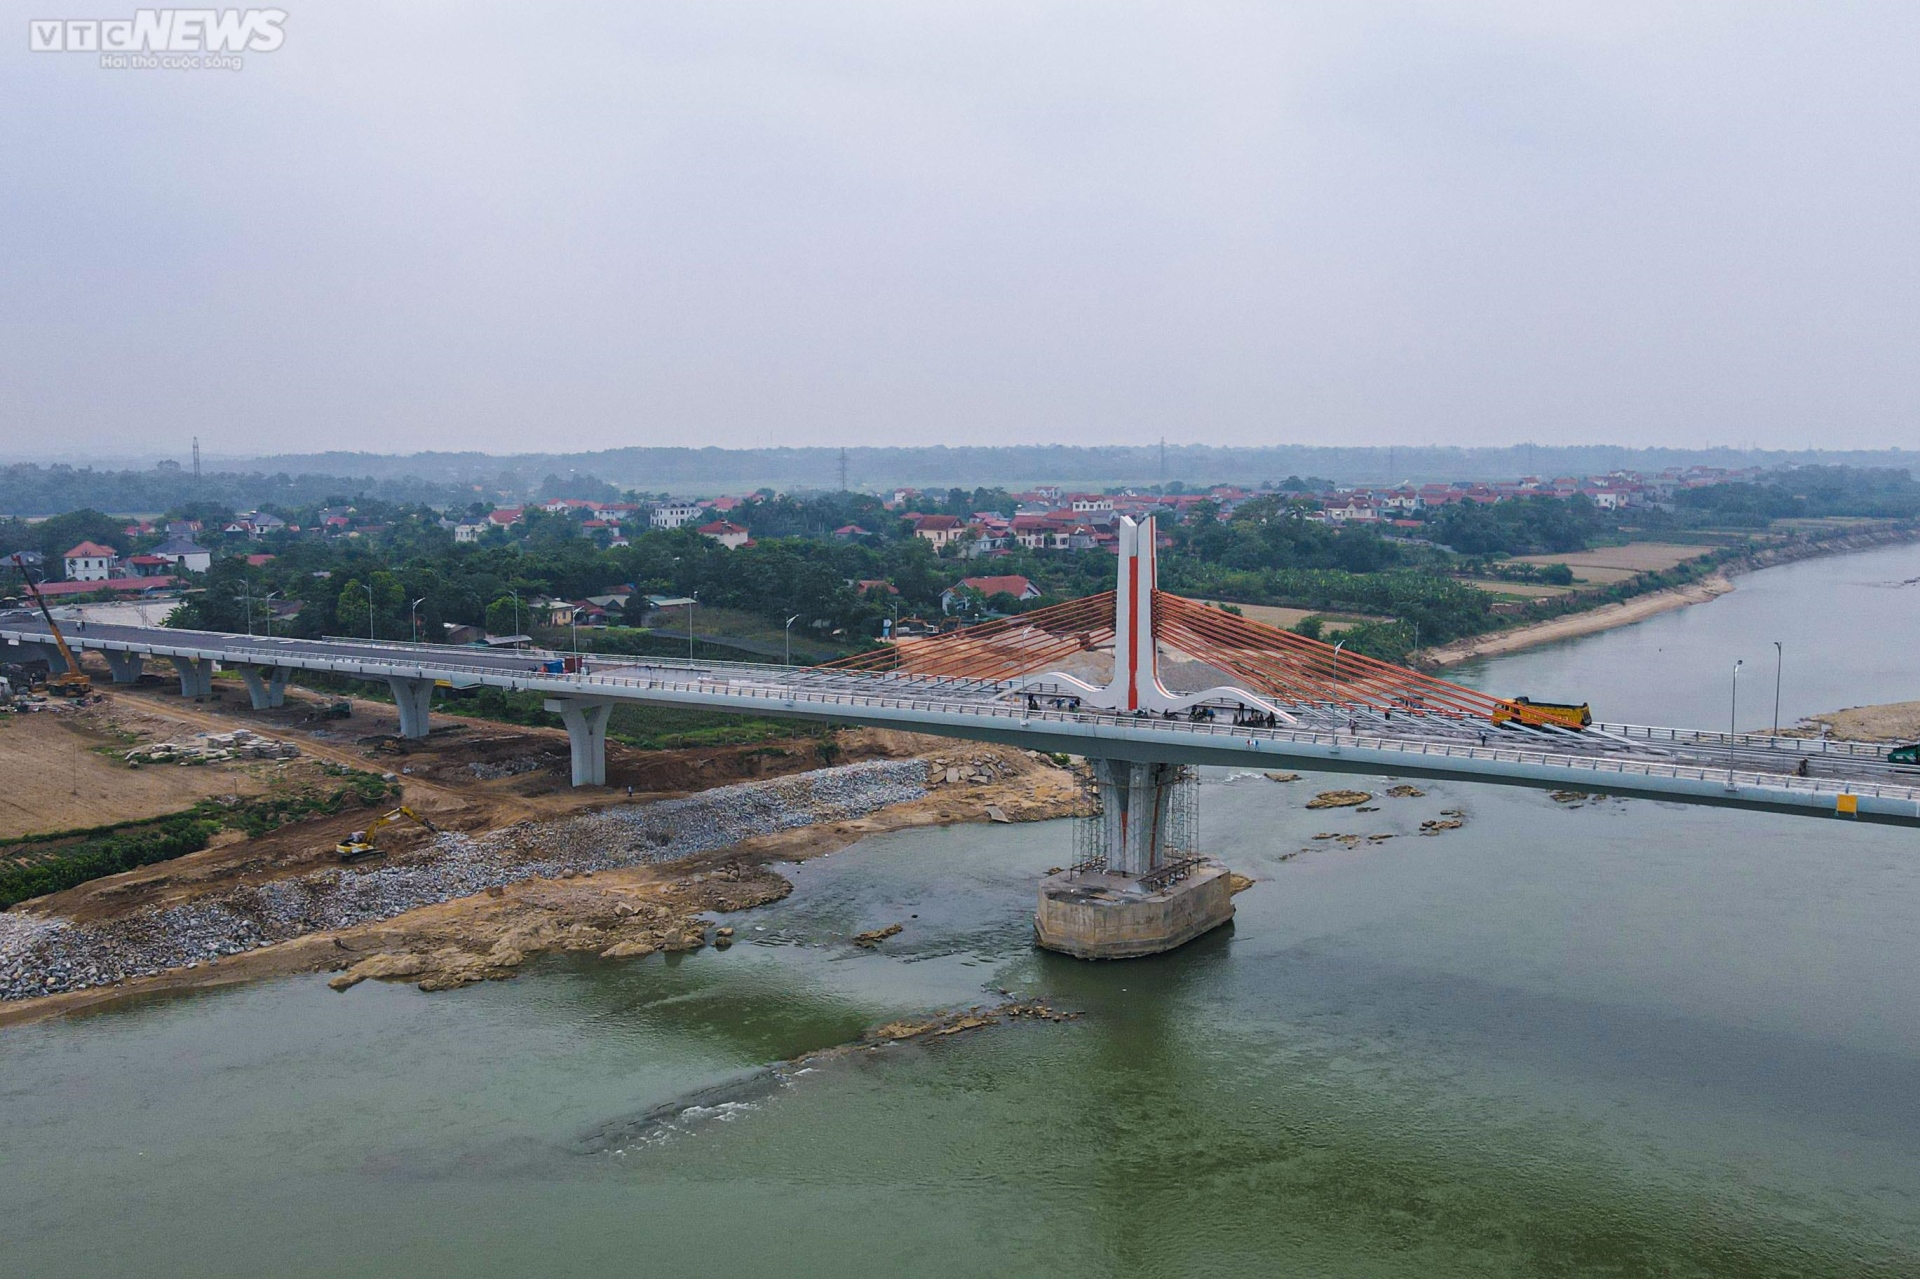 Chiêm ngưỡng cây cầu 540 tỷ đồng nối 2 tỉnh Vĩnh Phúc và Phú Thọ - Ảnh 13.